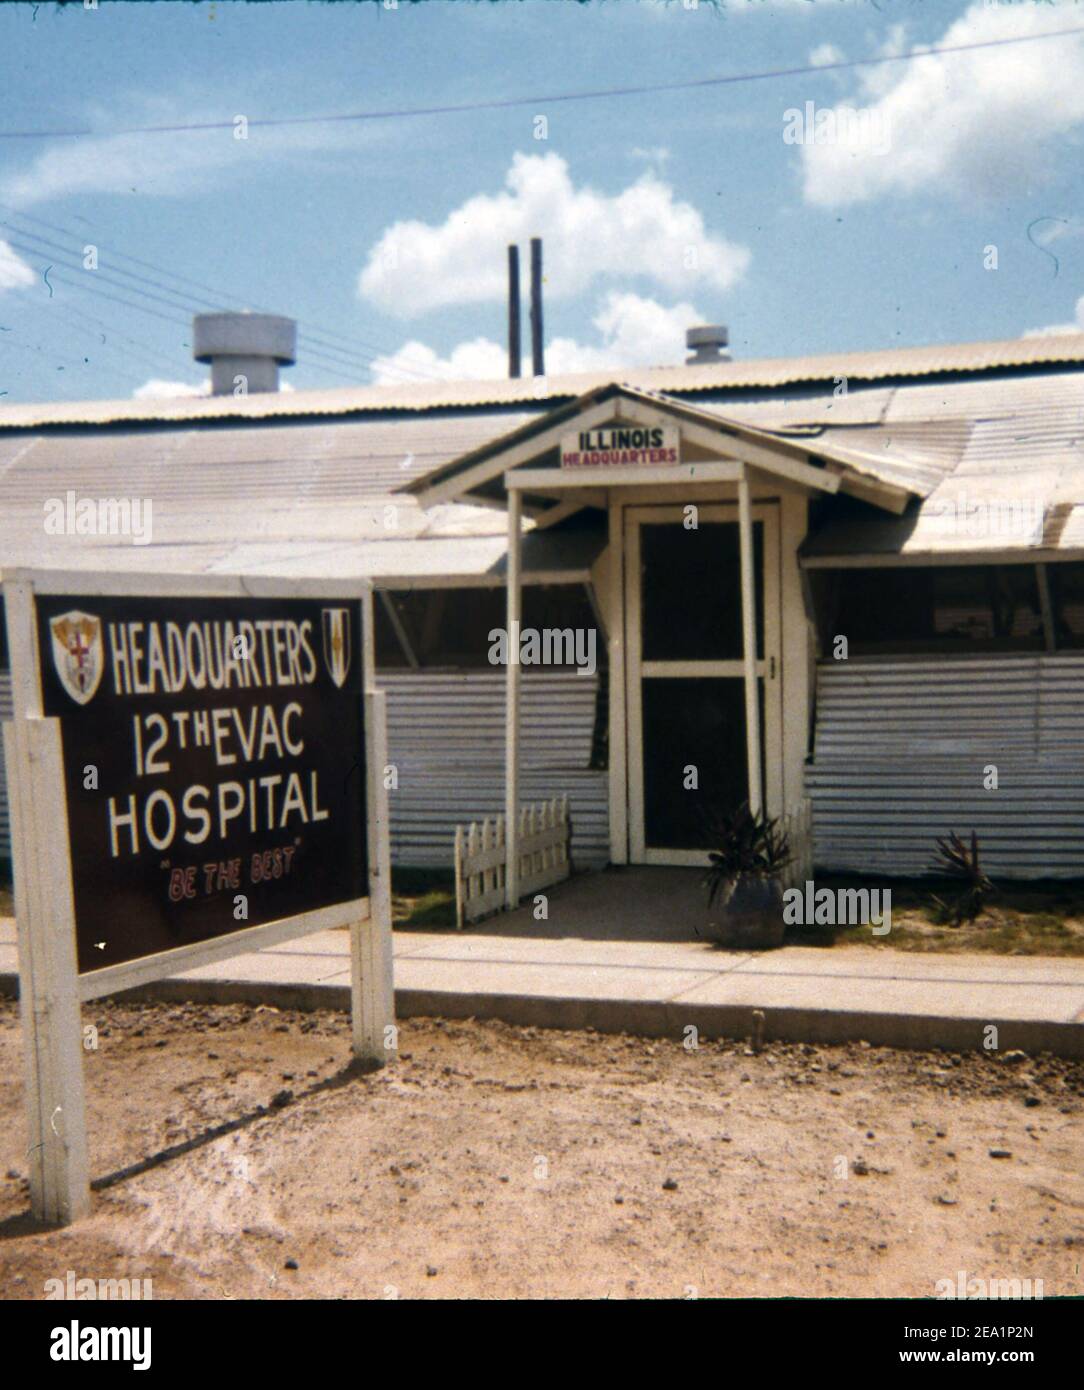 USA Vietnam-Krieg / Vietnam War - 12th Evacuation Hospital Cu Chi Stock Photo